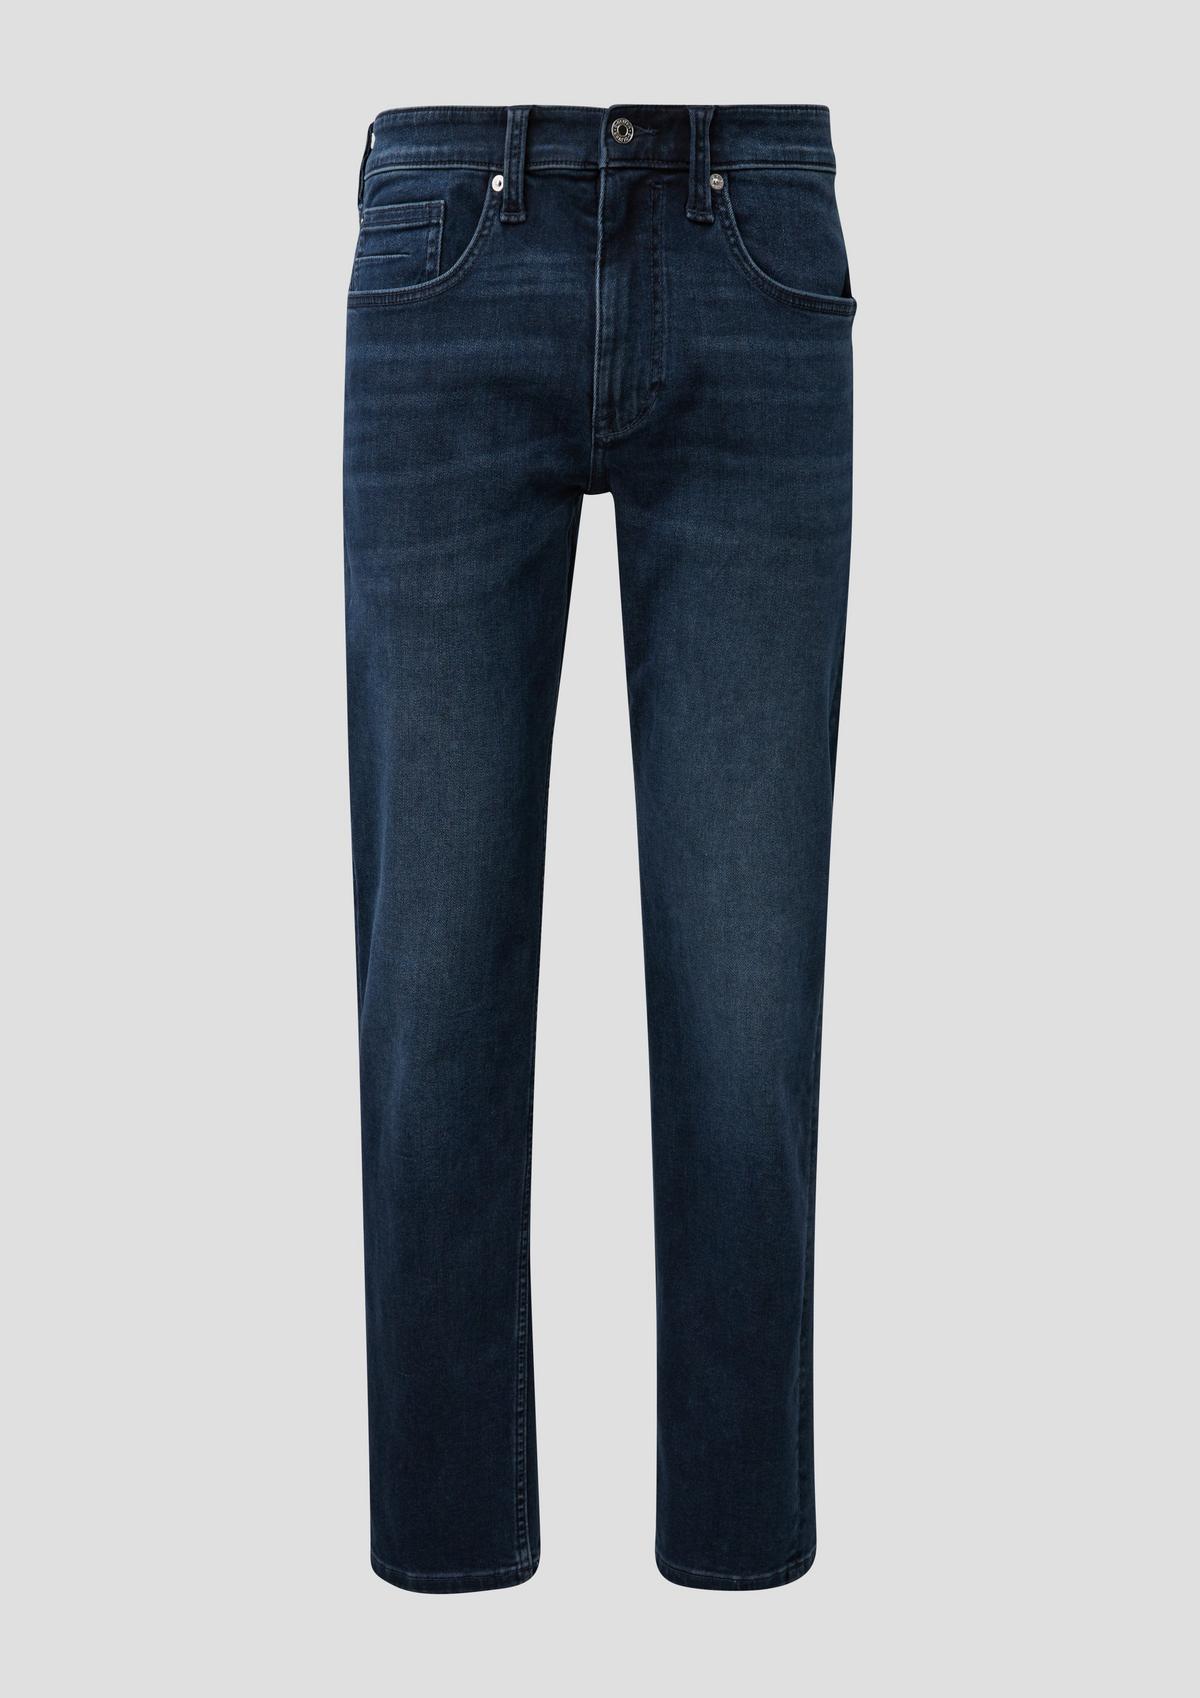 s.Oliver Nelio jeans / slim fit / mid rise / slim leg